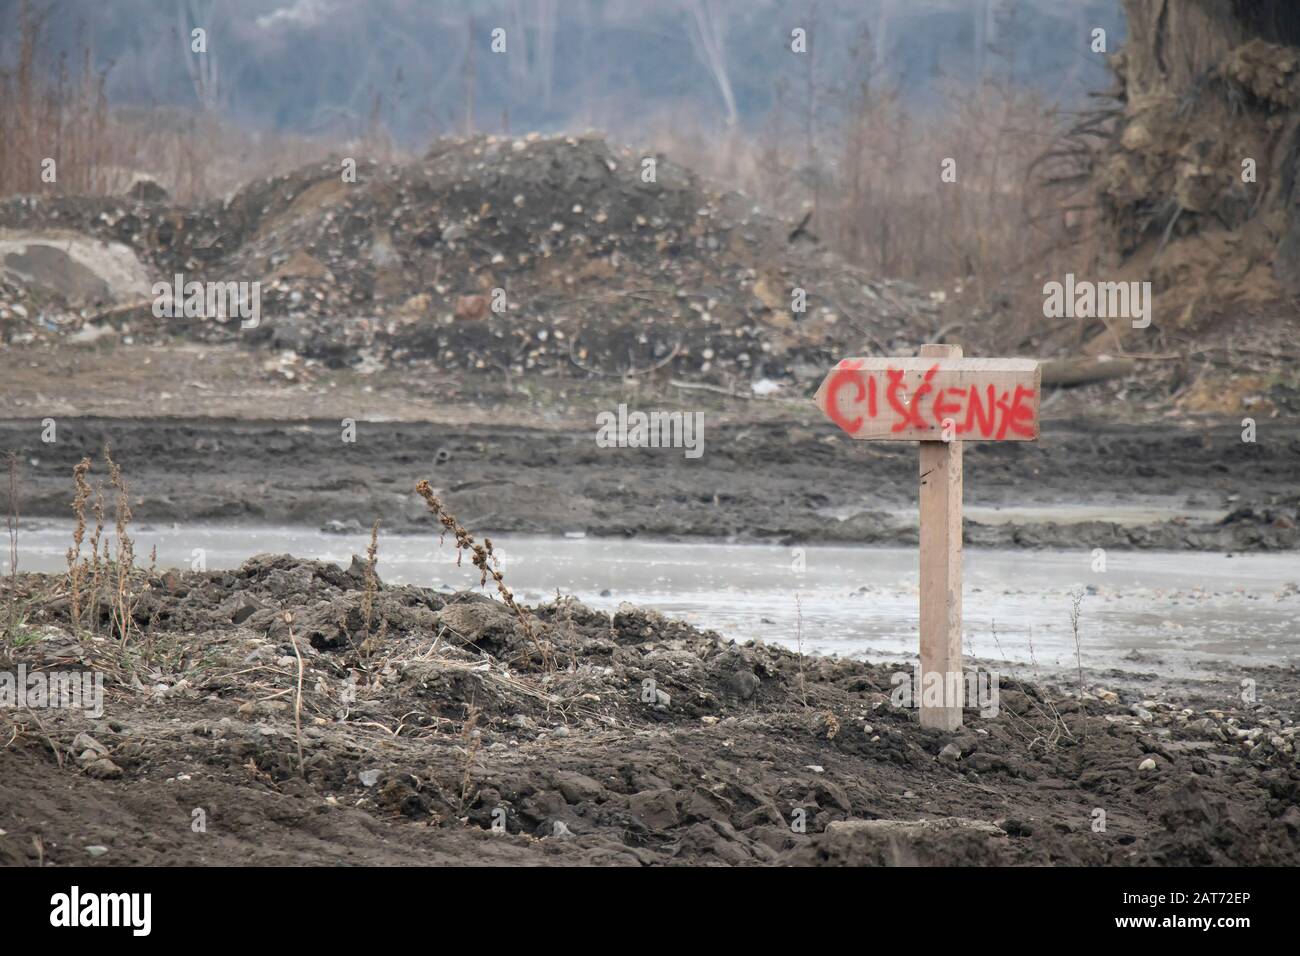 Belgrad, Serbien - 26. Januar 2020: Detail einer Schlammstraße auf der Wasserfront Baustelle Entsorgungsgebiet mit Holzrichtungsschild zur Reinigung Stockfoto